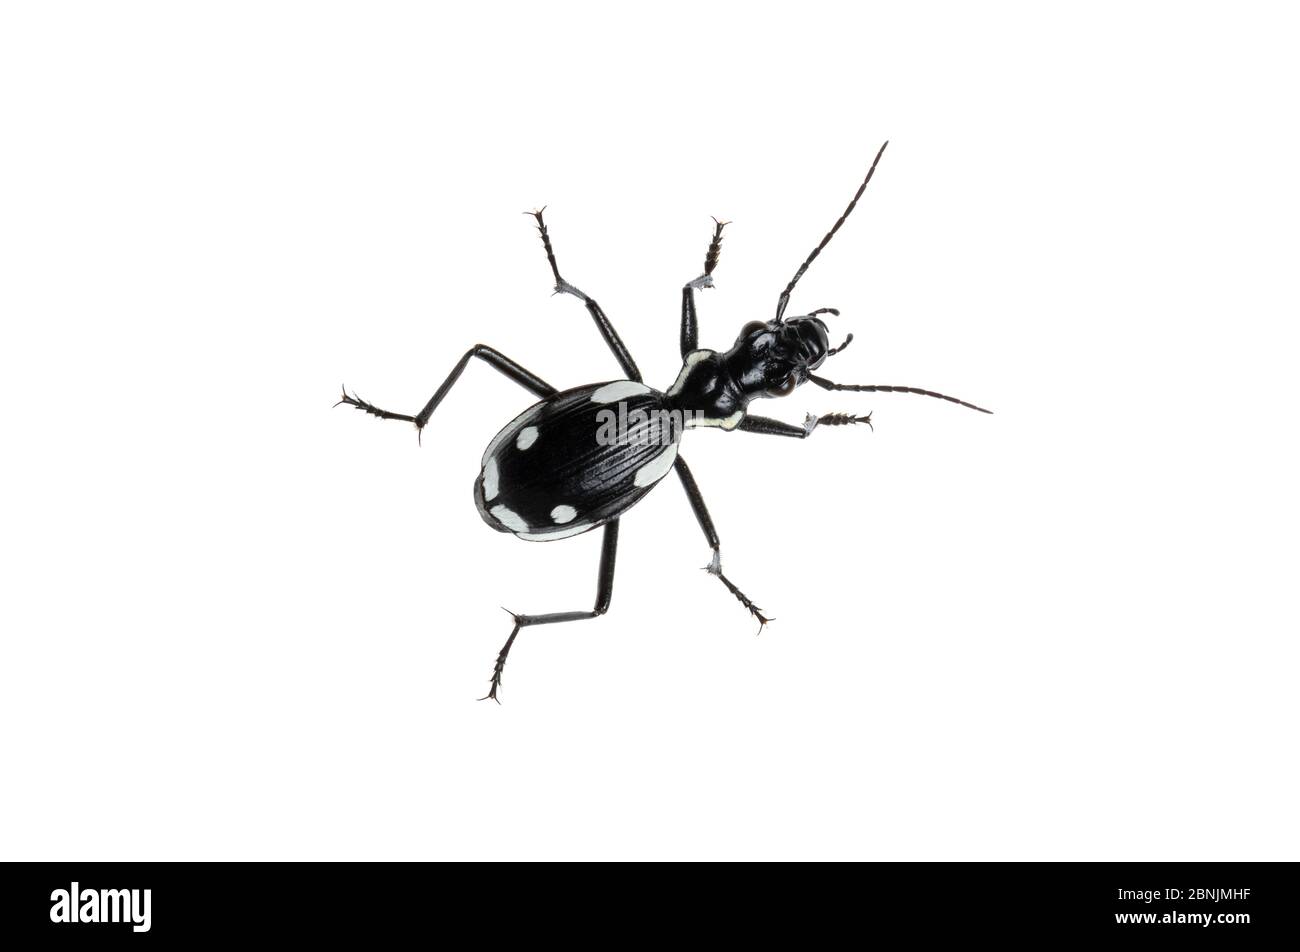 Käfer (Anthia sexmaculata) Negev Wüste, Israel. Fokus-gestapelt und zugeschnitten. Meetyourneighbors.net Projekt Stockfoto